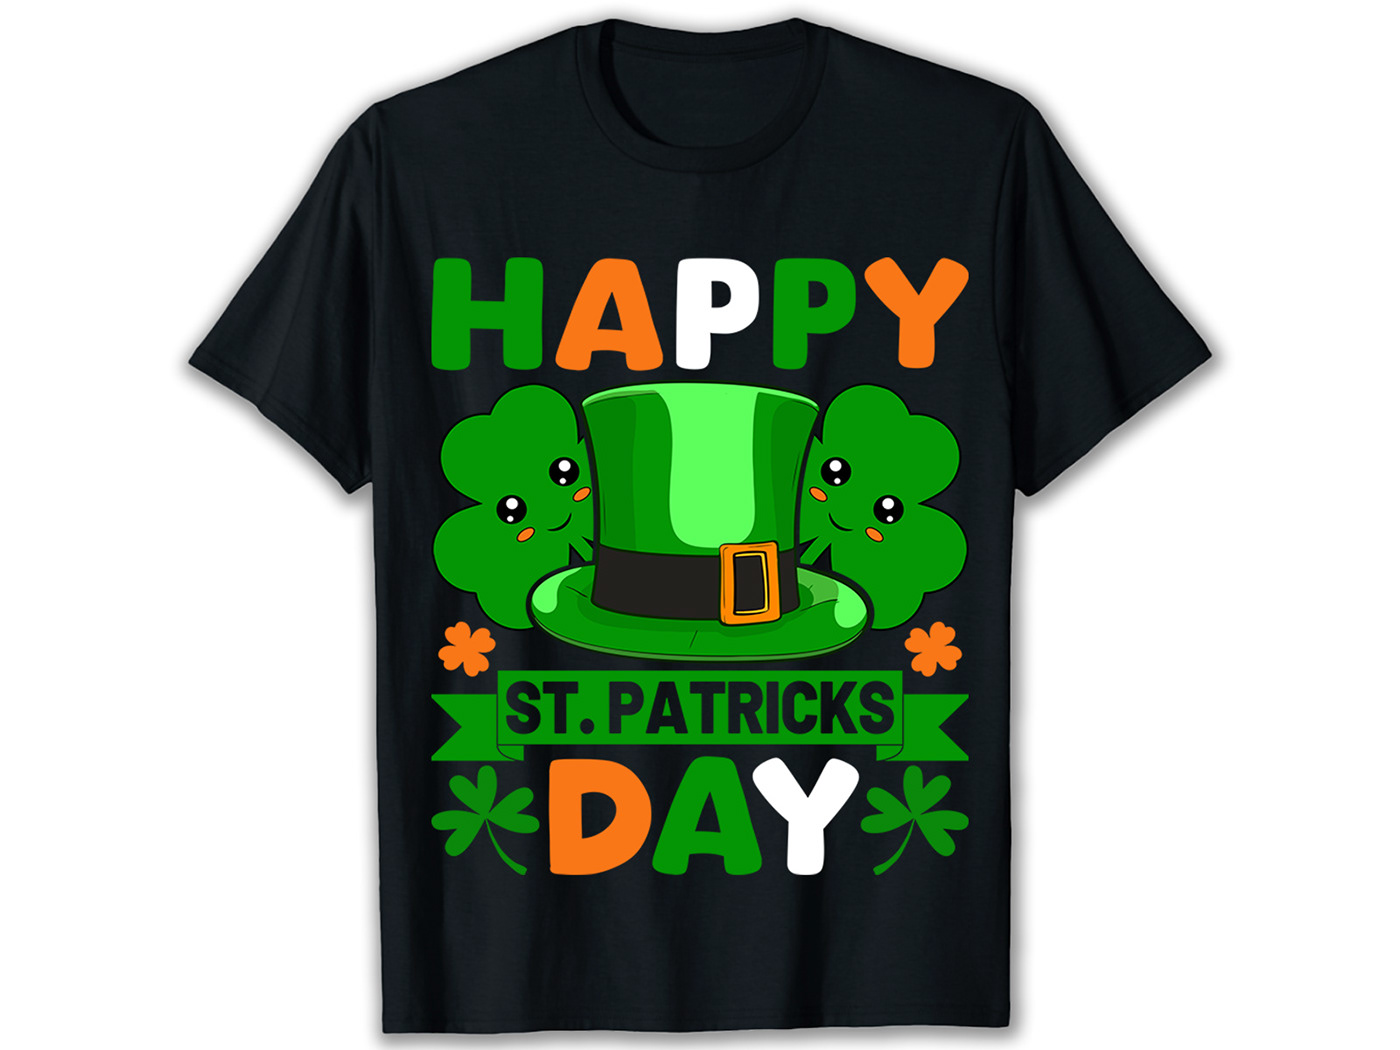 St. Patrick's Day T-shirt Design Bundle